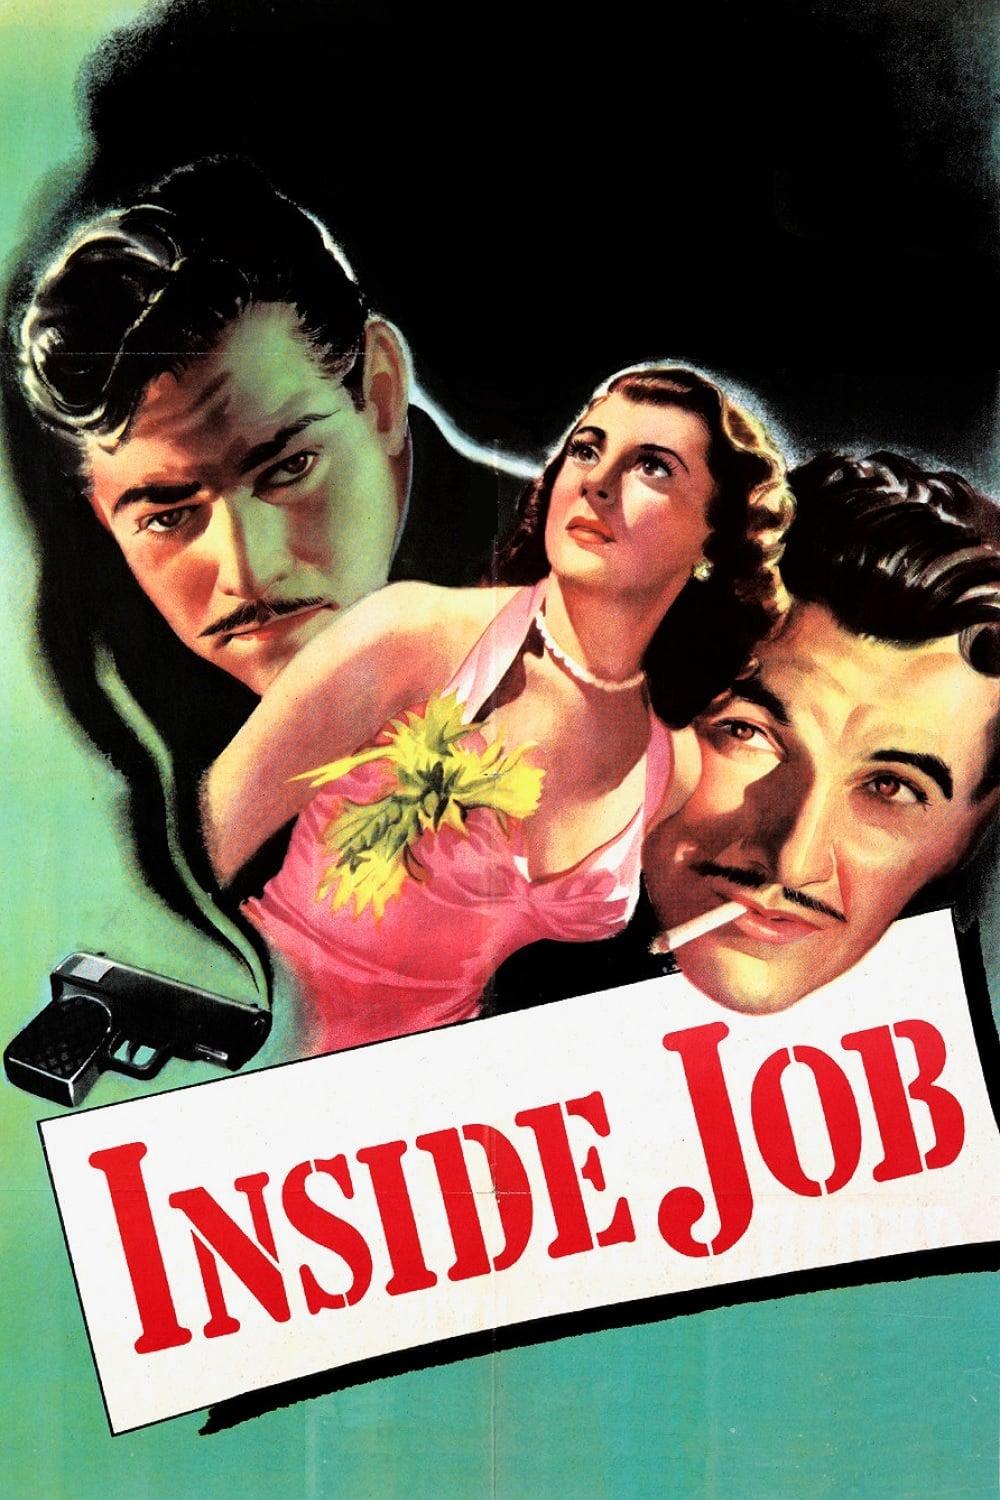 Inside Job poster